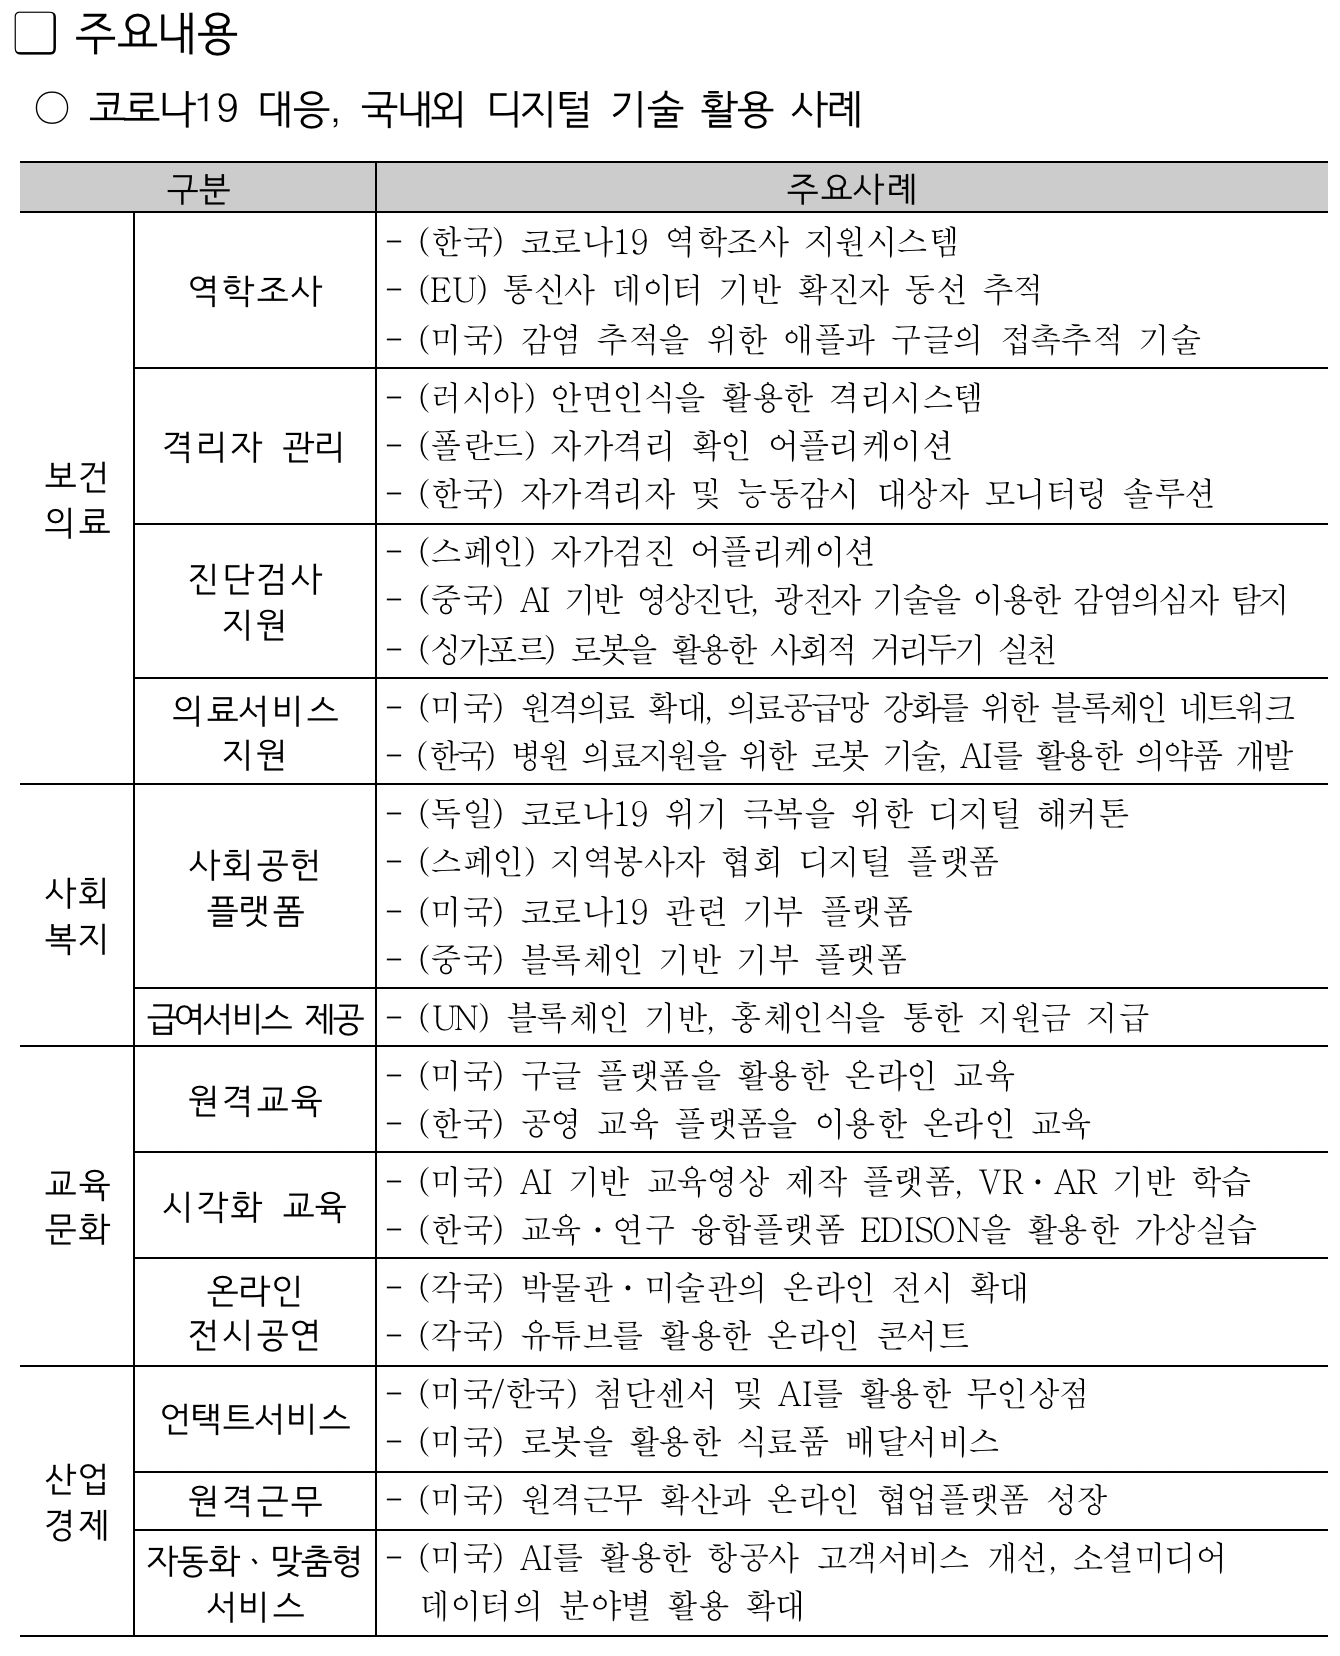 서울디지털재단,「코로나19에 대응하는 디지털 기술 동향」보고서 발간